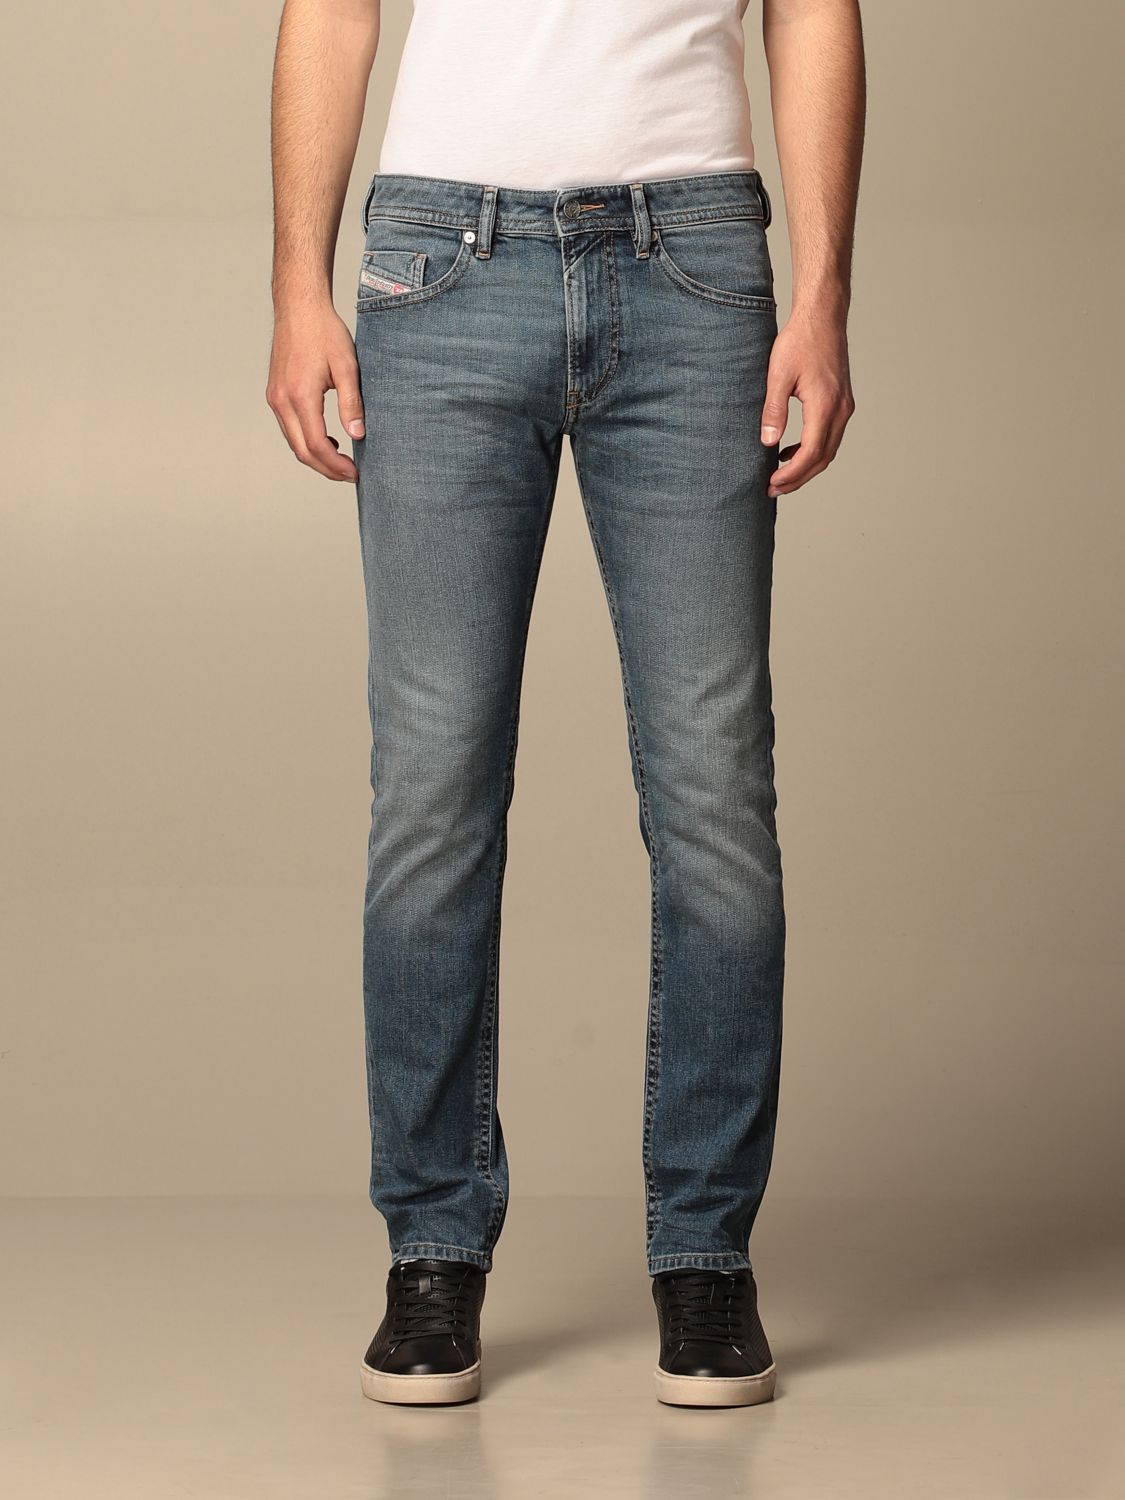 DIESEL: 5-pocket jeans - Denim | Diesel jeans 00SB6C 009EI online on ...